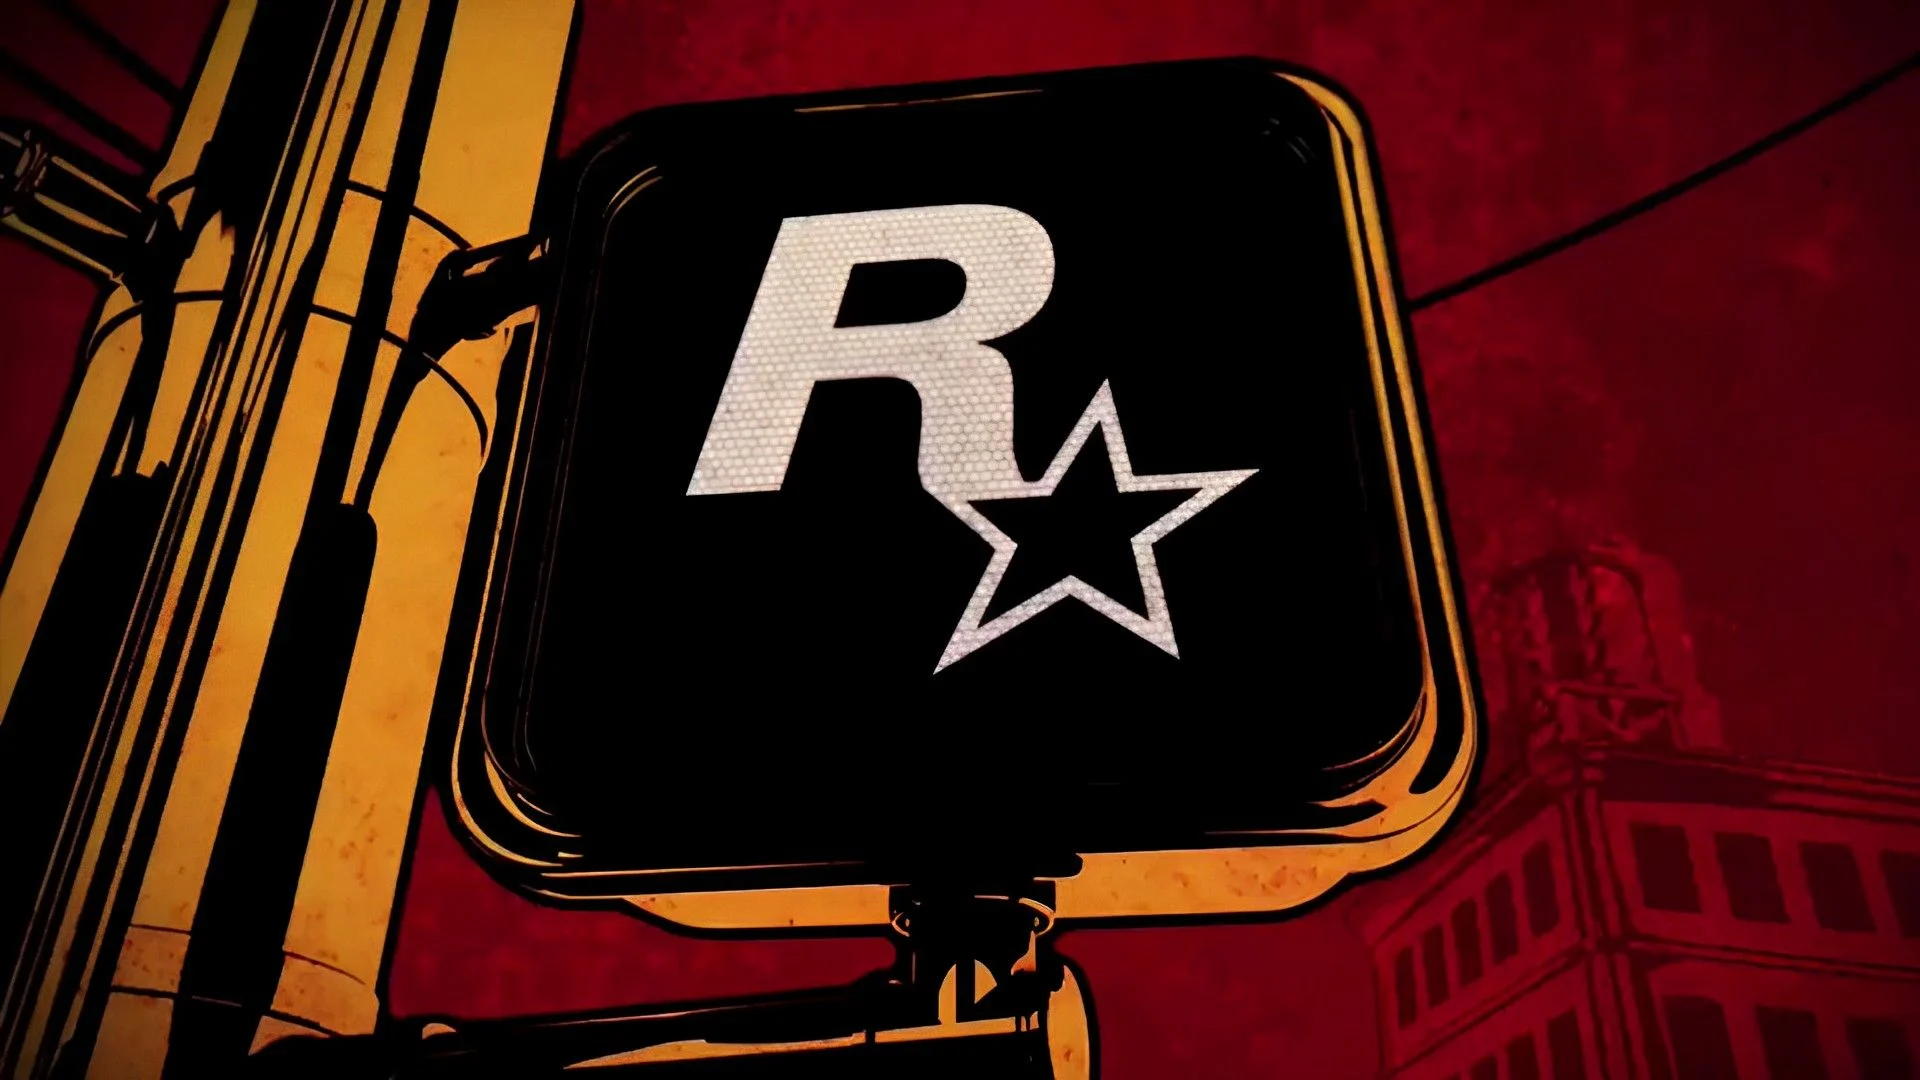 Rockstar may share new information regarding GTA 6